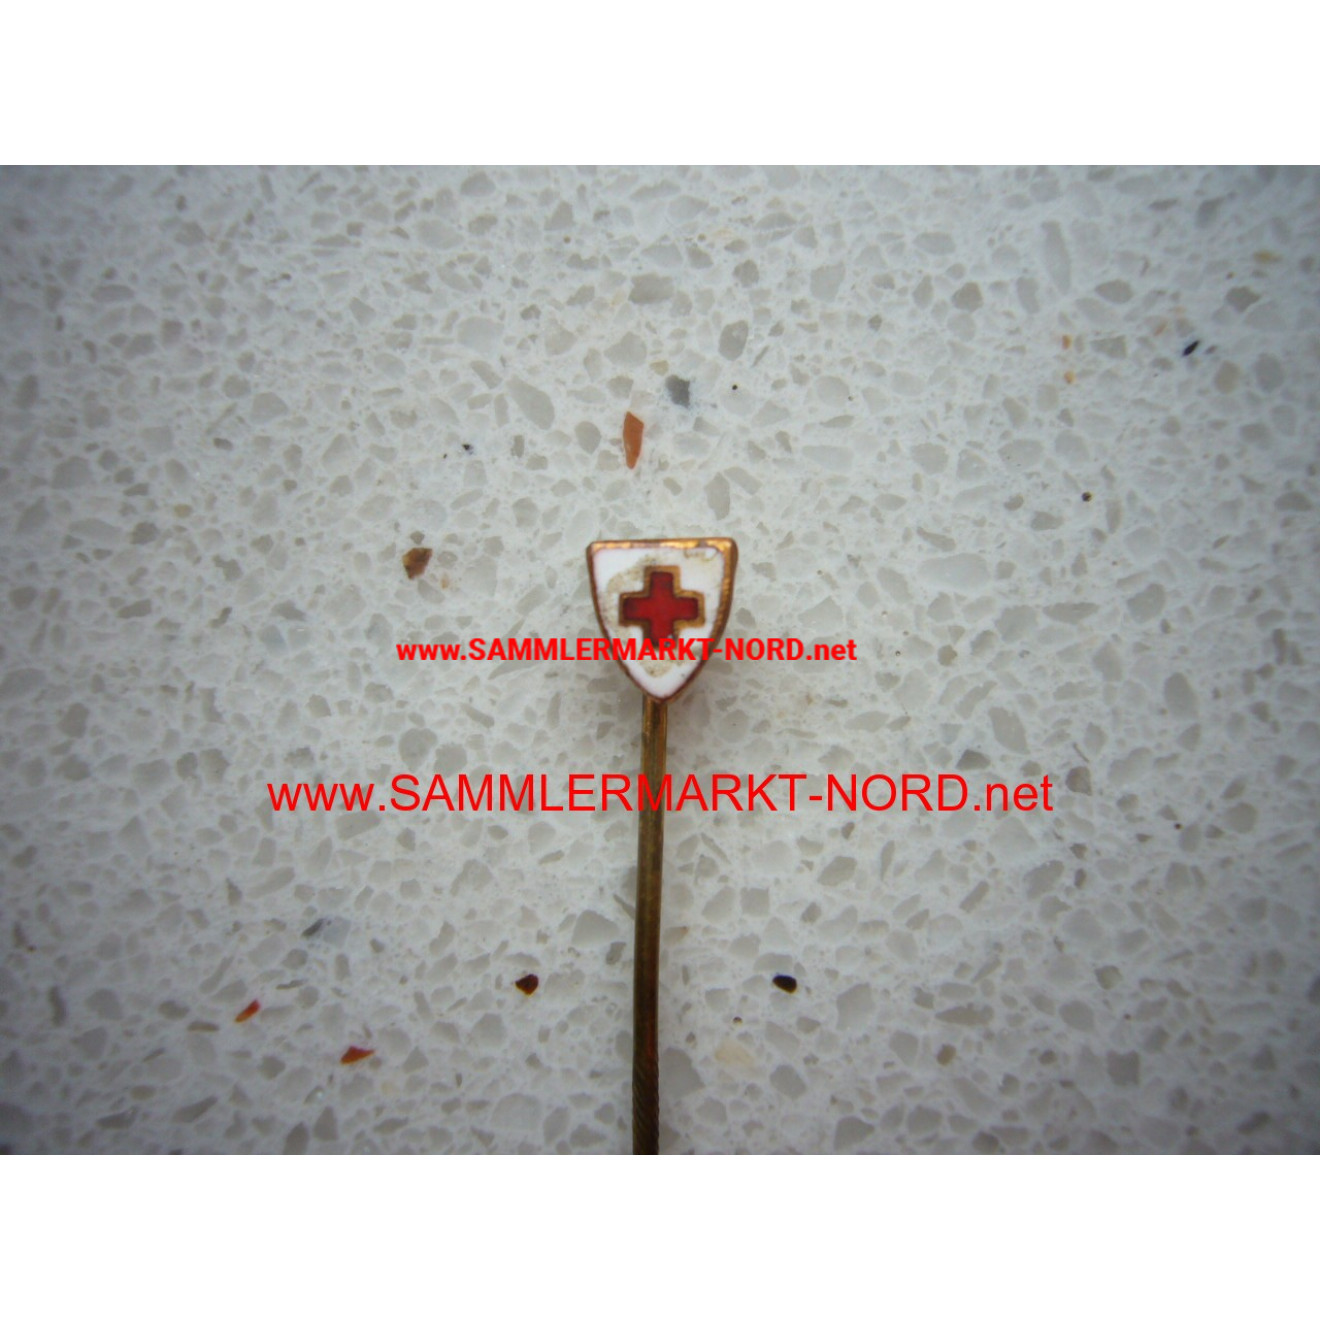 German Red Cross DRK - Member needle